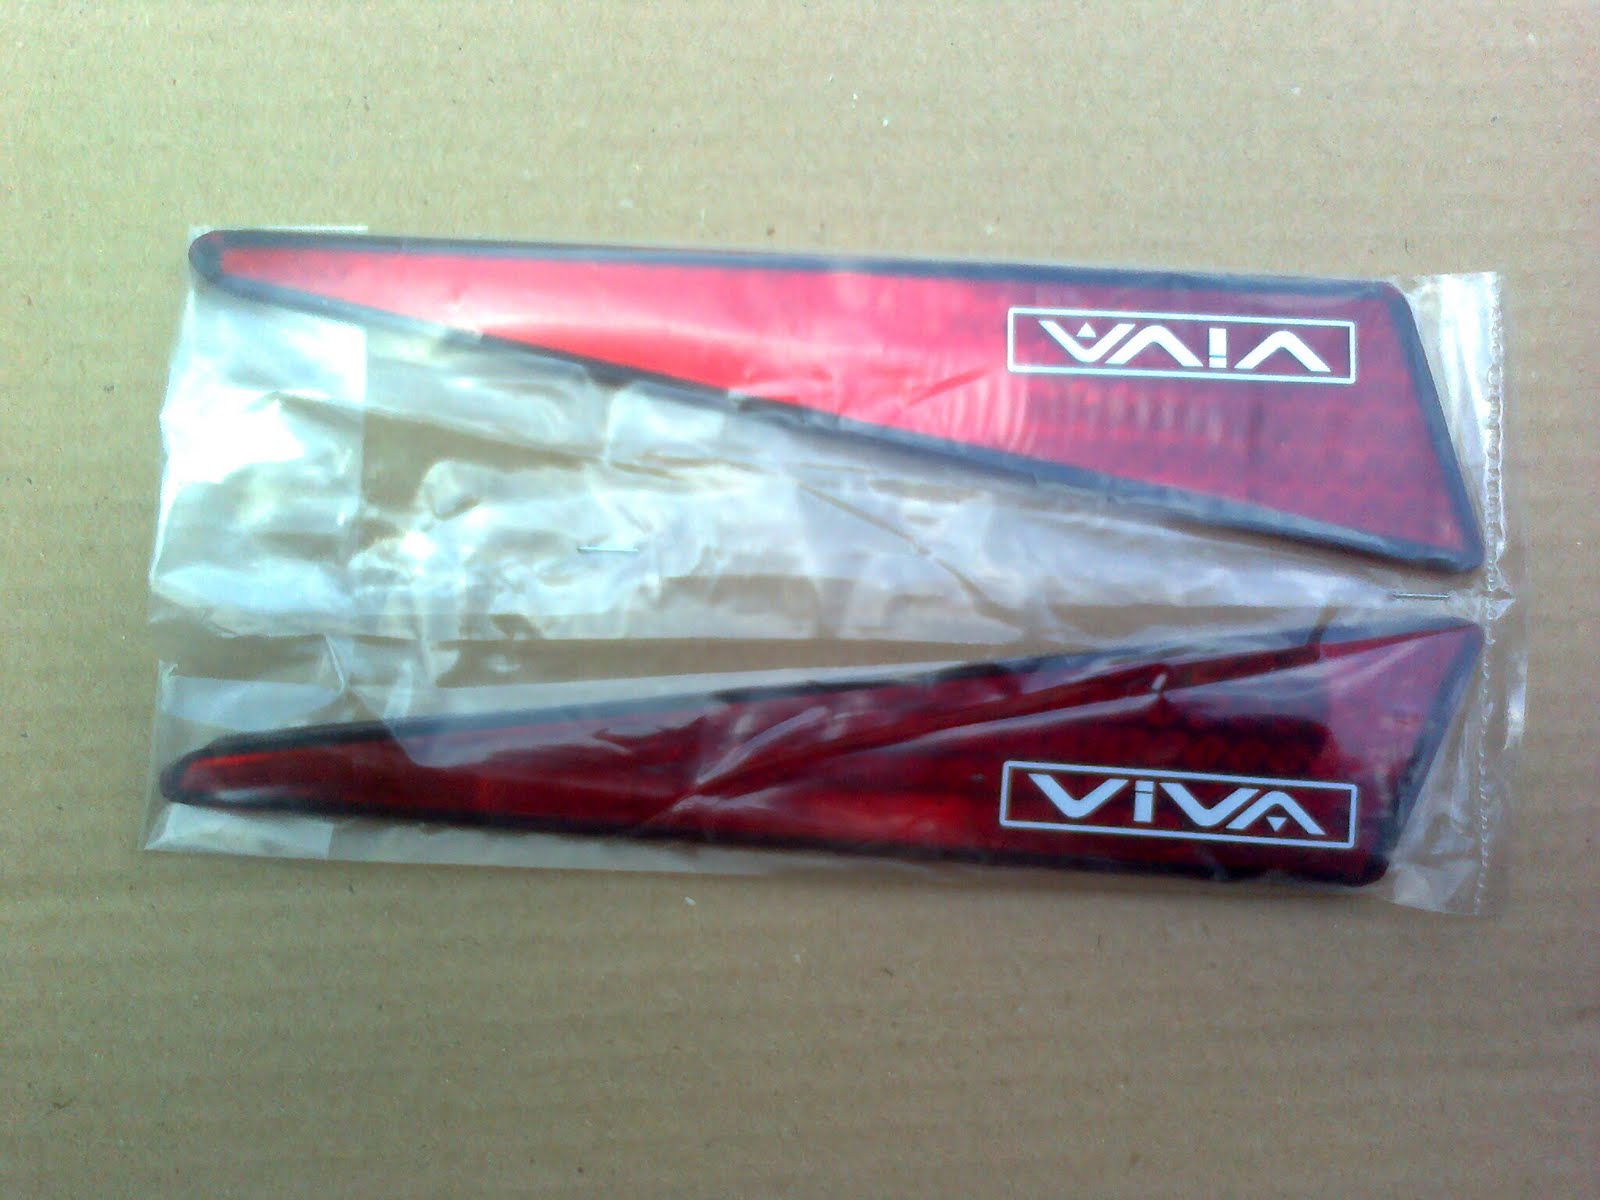 ND CAR PART & ACCESSORY: New Viva Rear Bumper Reflector 1 set